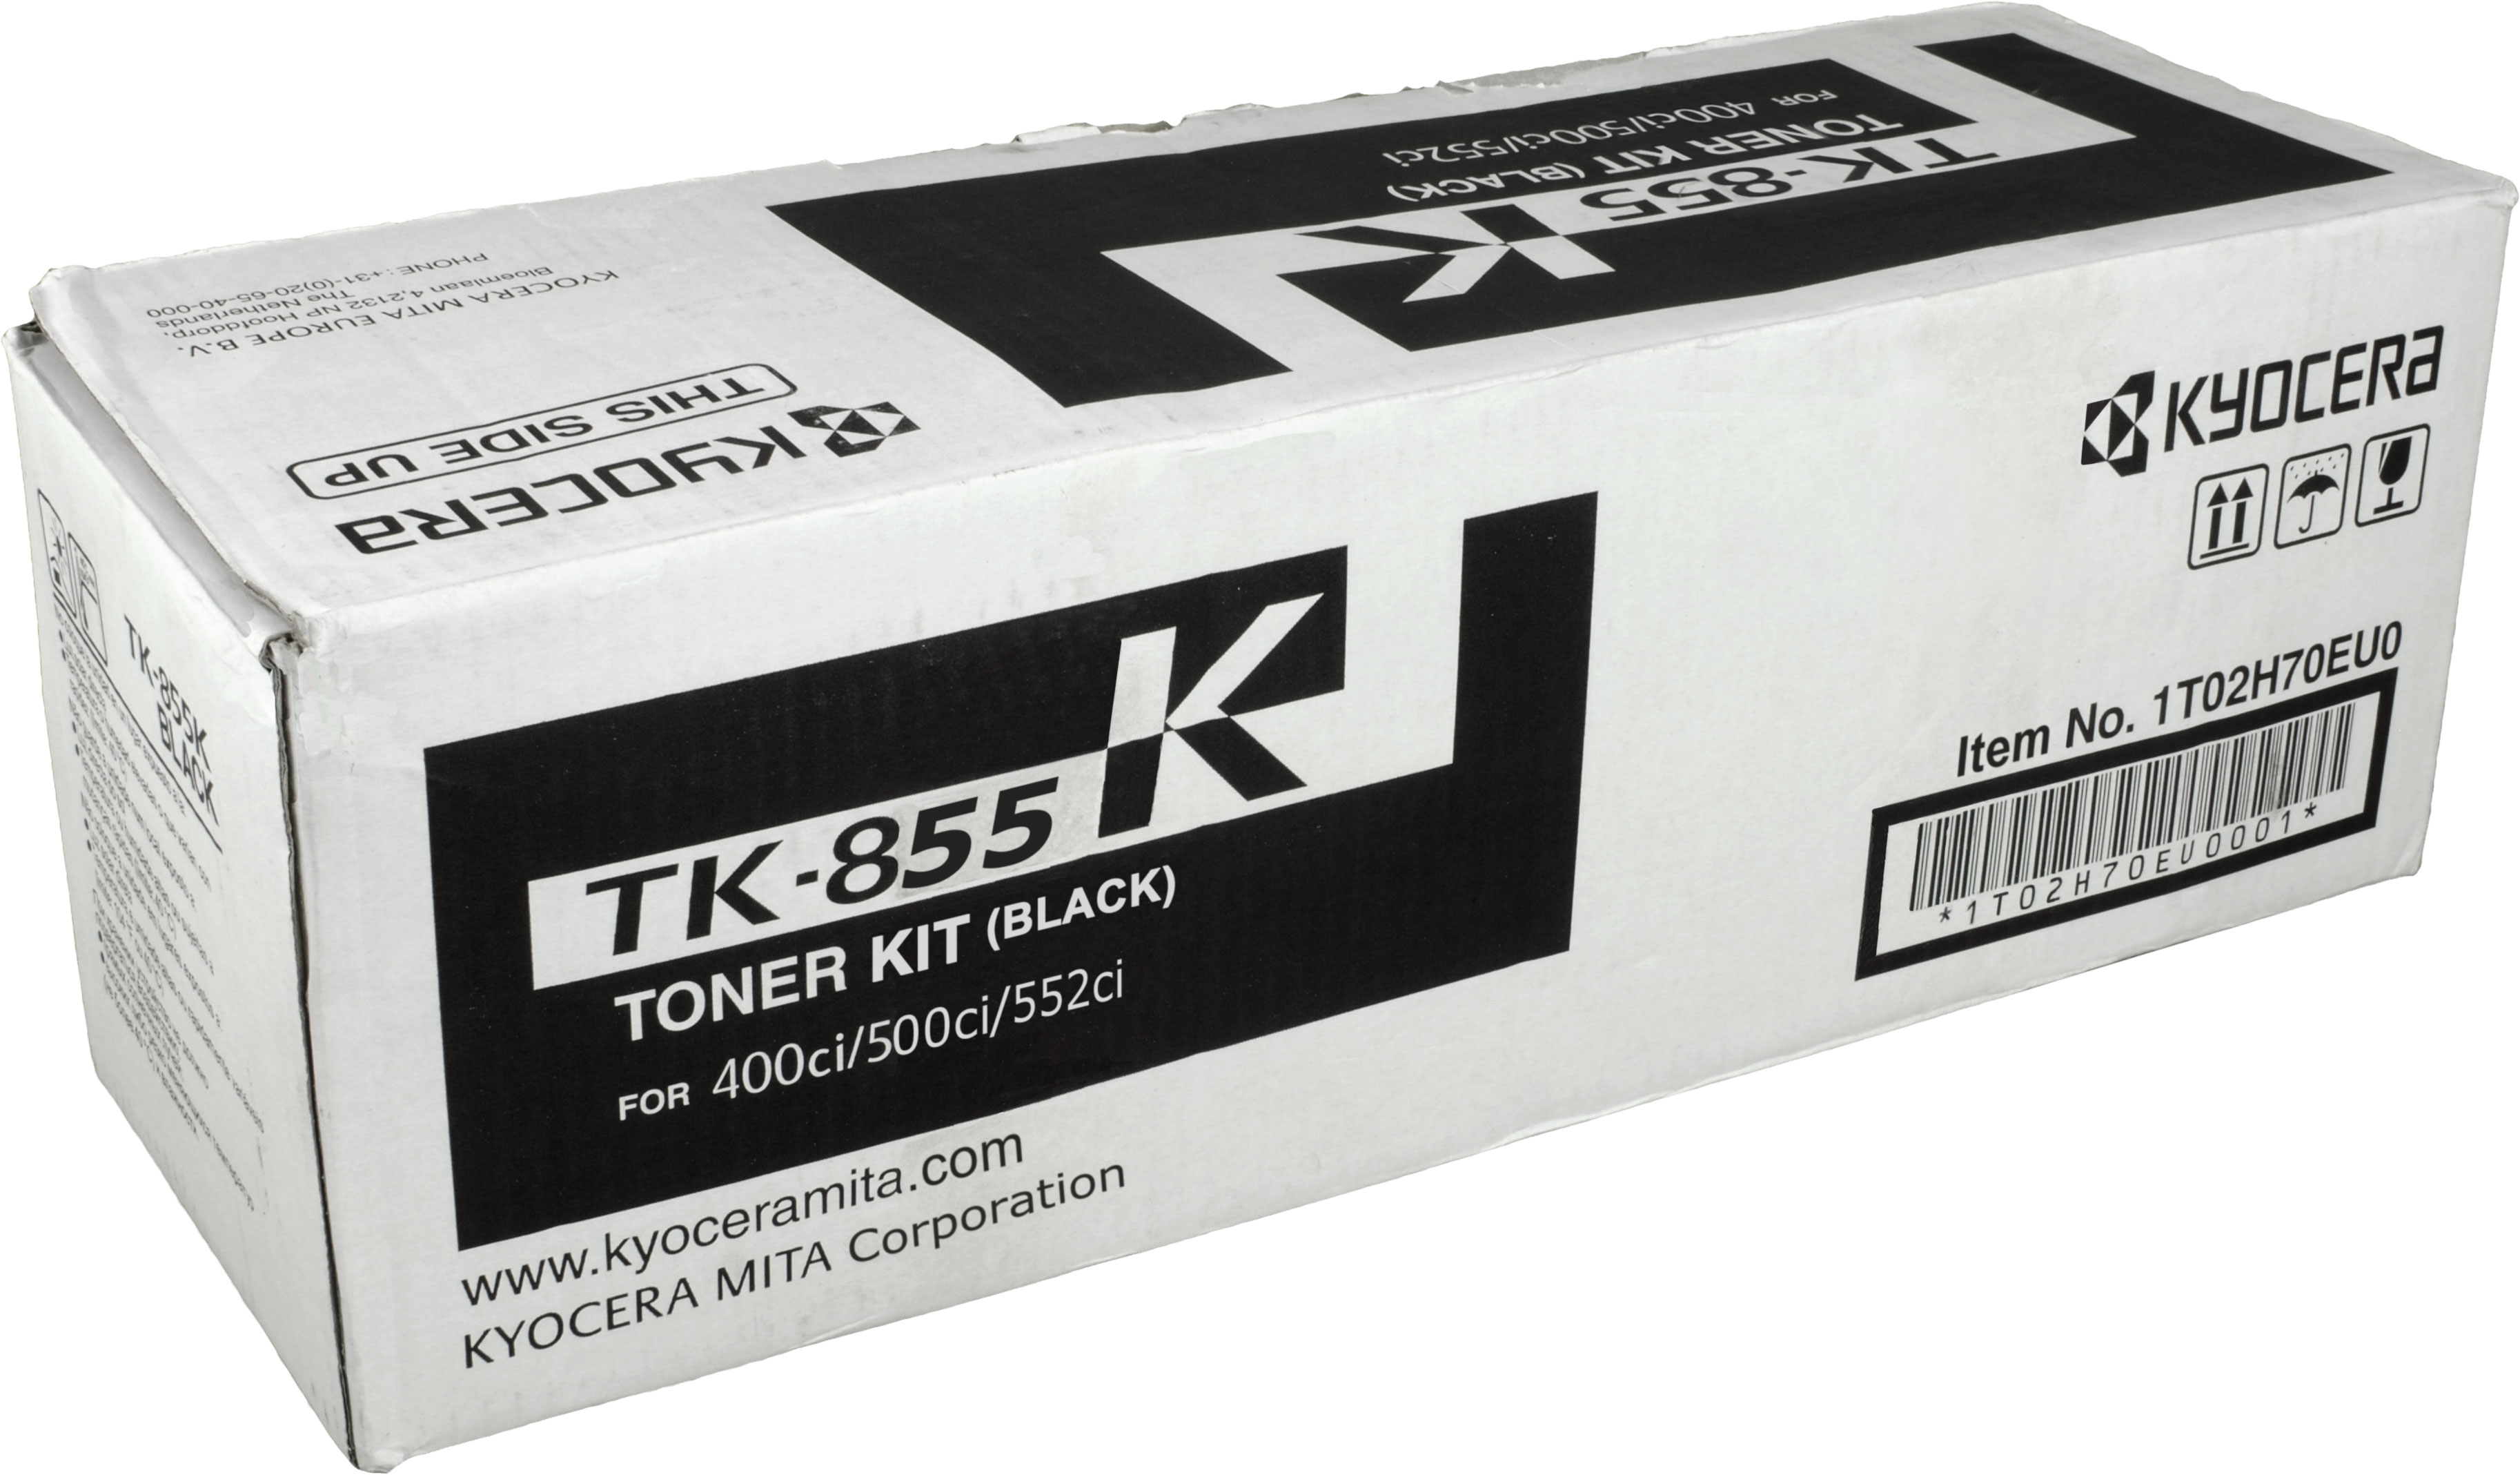 KYOCERA Toner (TK-855K) TK-855K schwarz